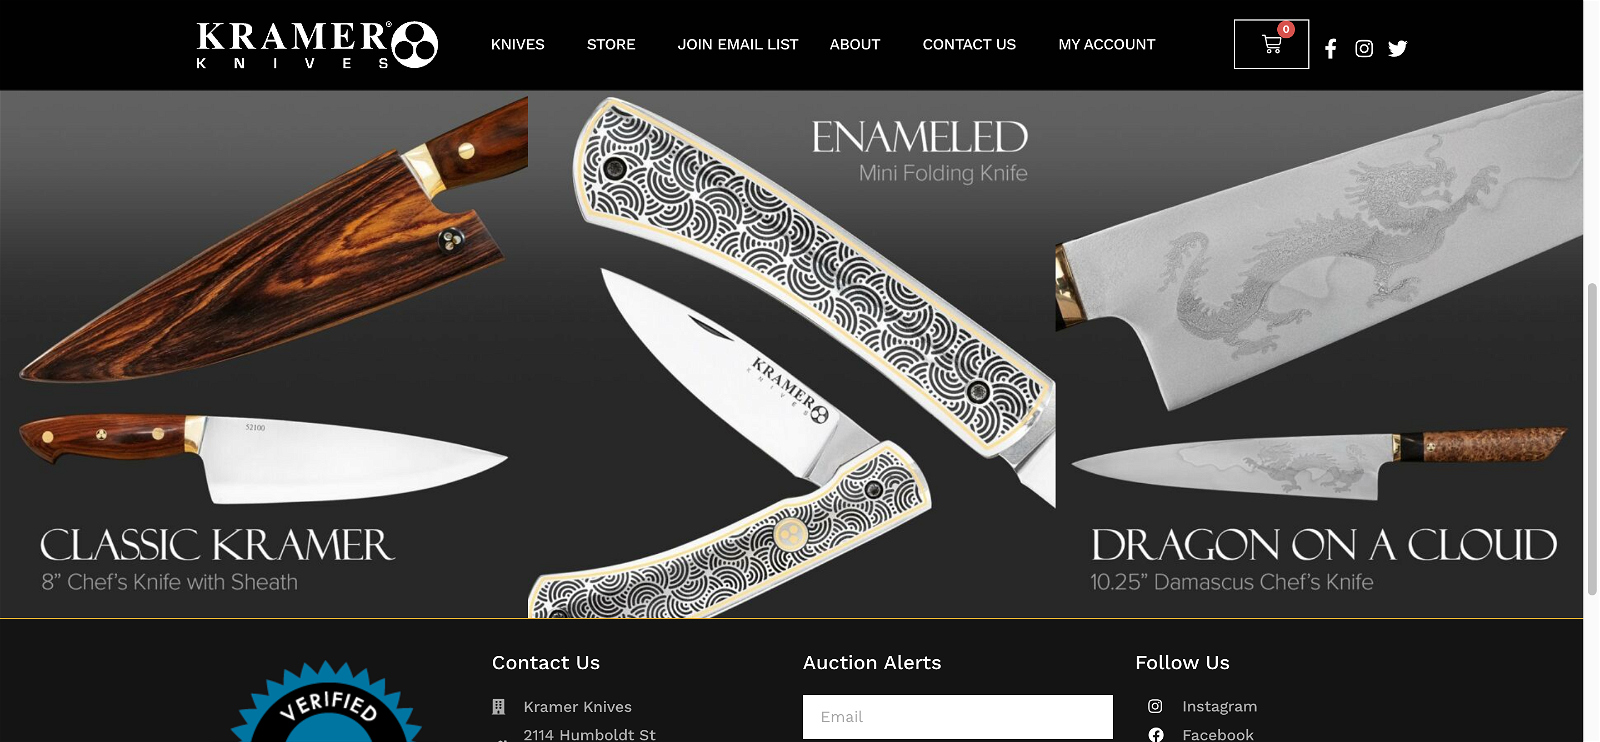 Kramer knives.com